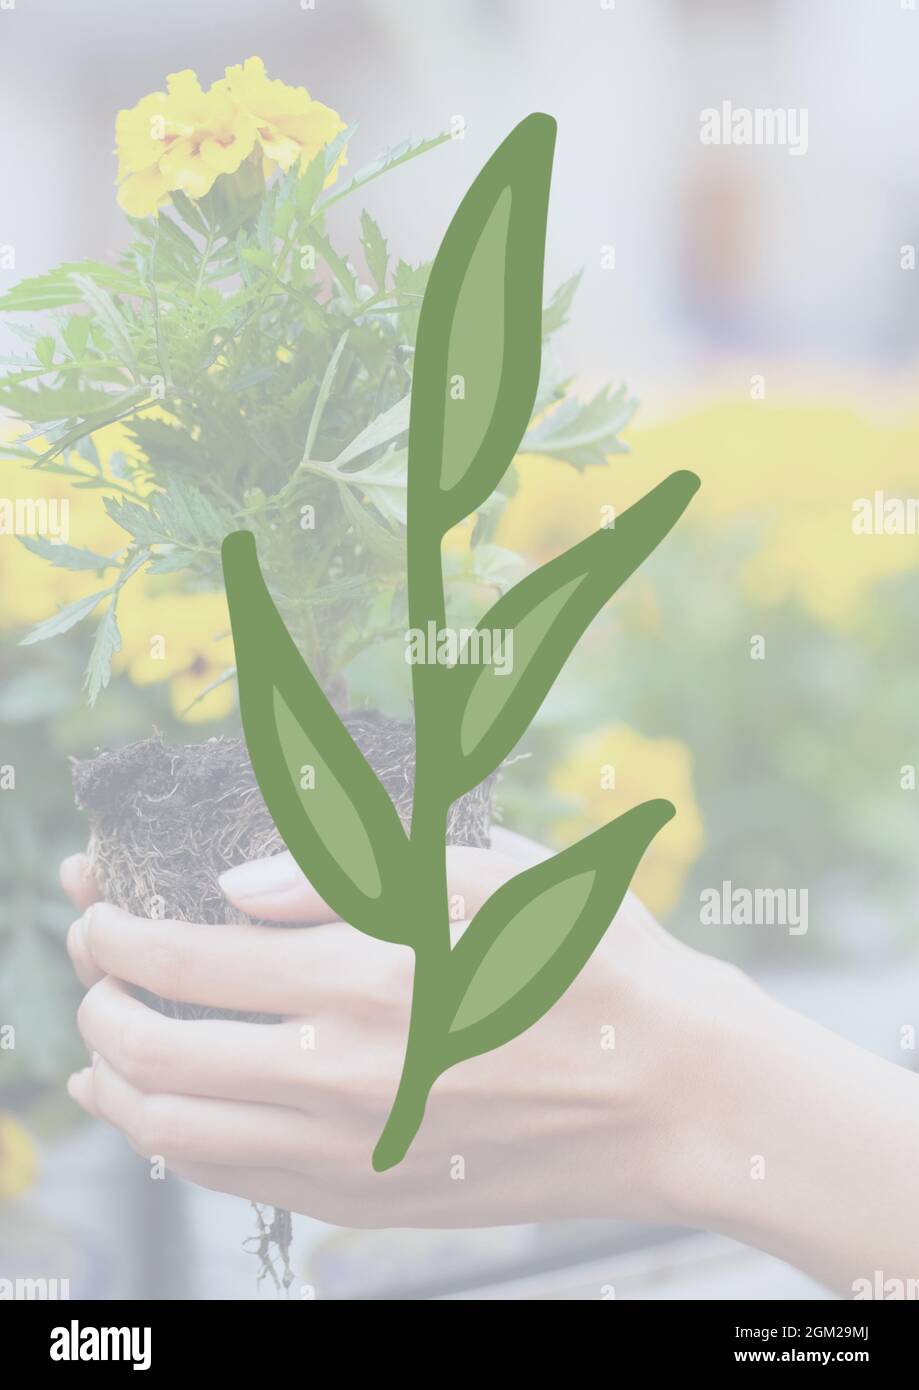 Tige avec icône de feuilles vertes contre la main tenant un échantillonnage de plante en arrière-plan Banque D'Images